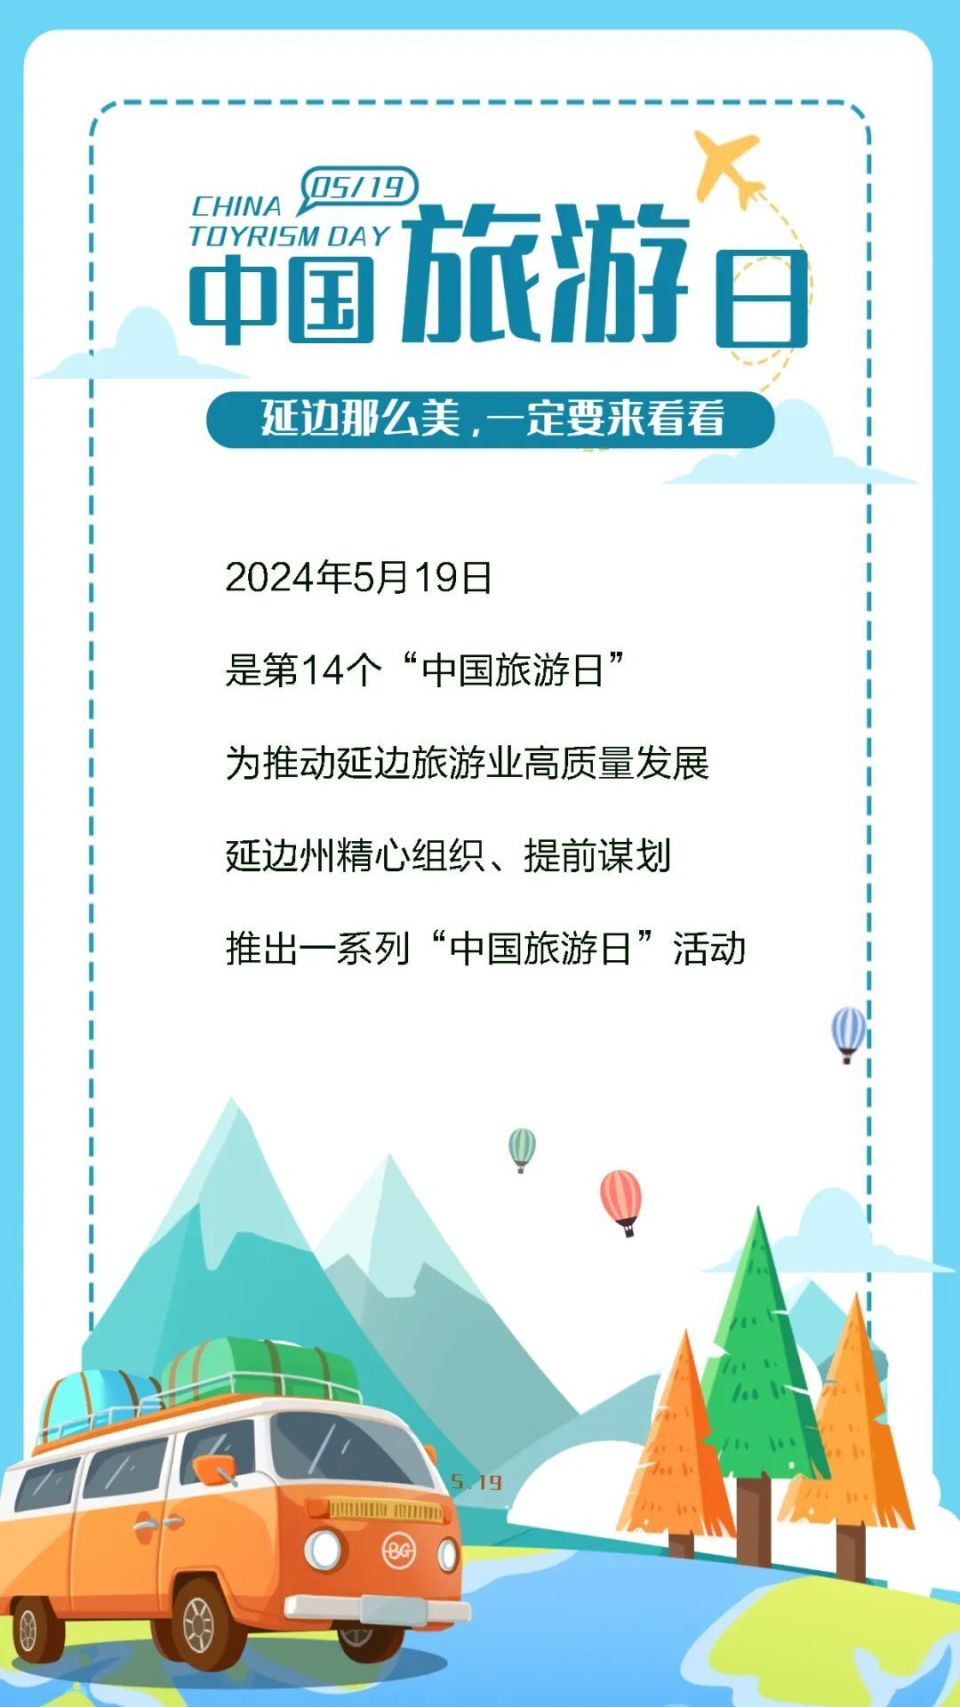 节事活动一,畅游延边,幸福生活2024年5·19中国旅游日延边州主题